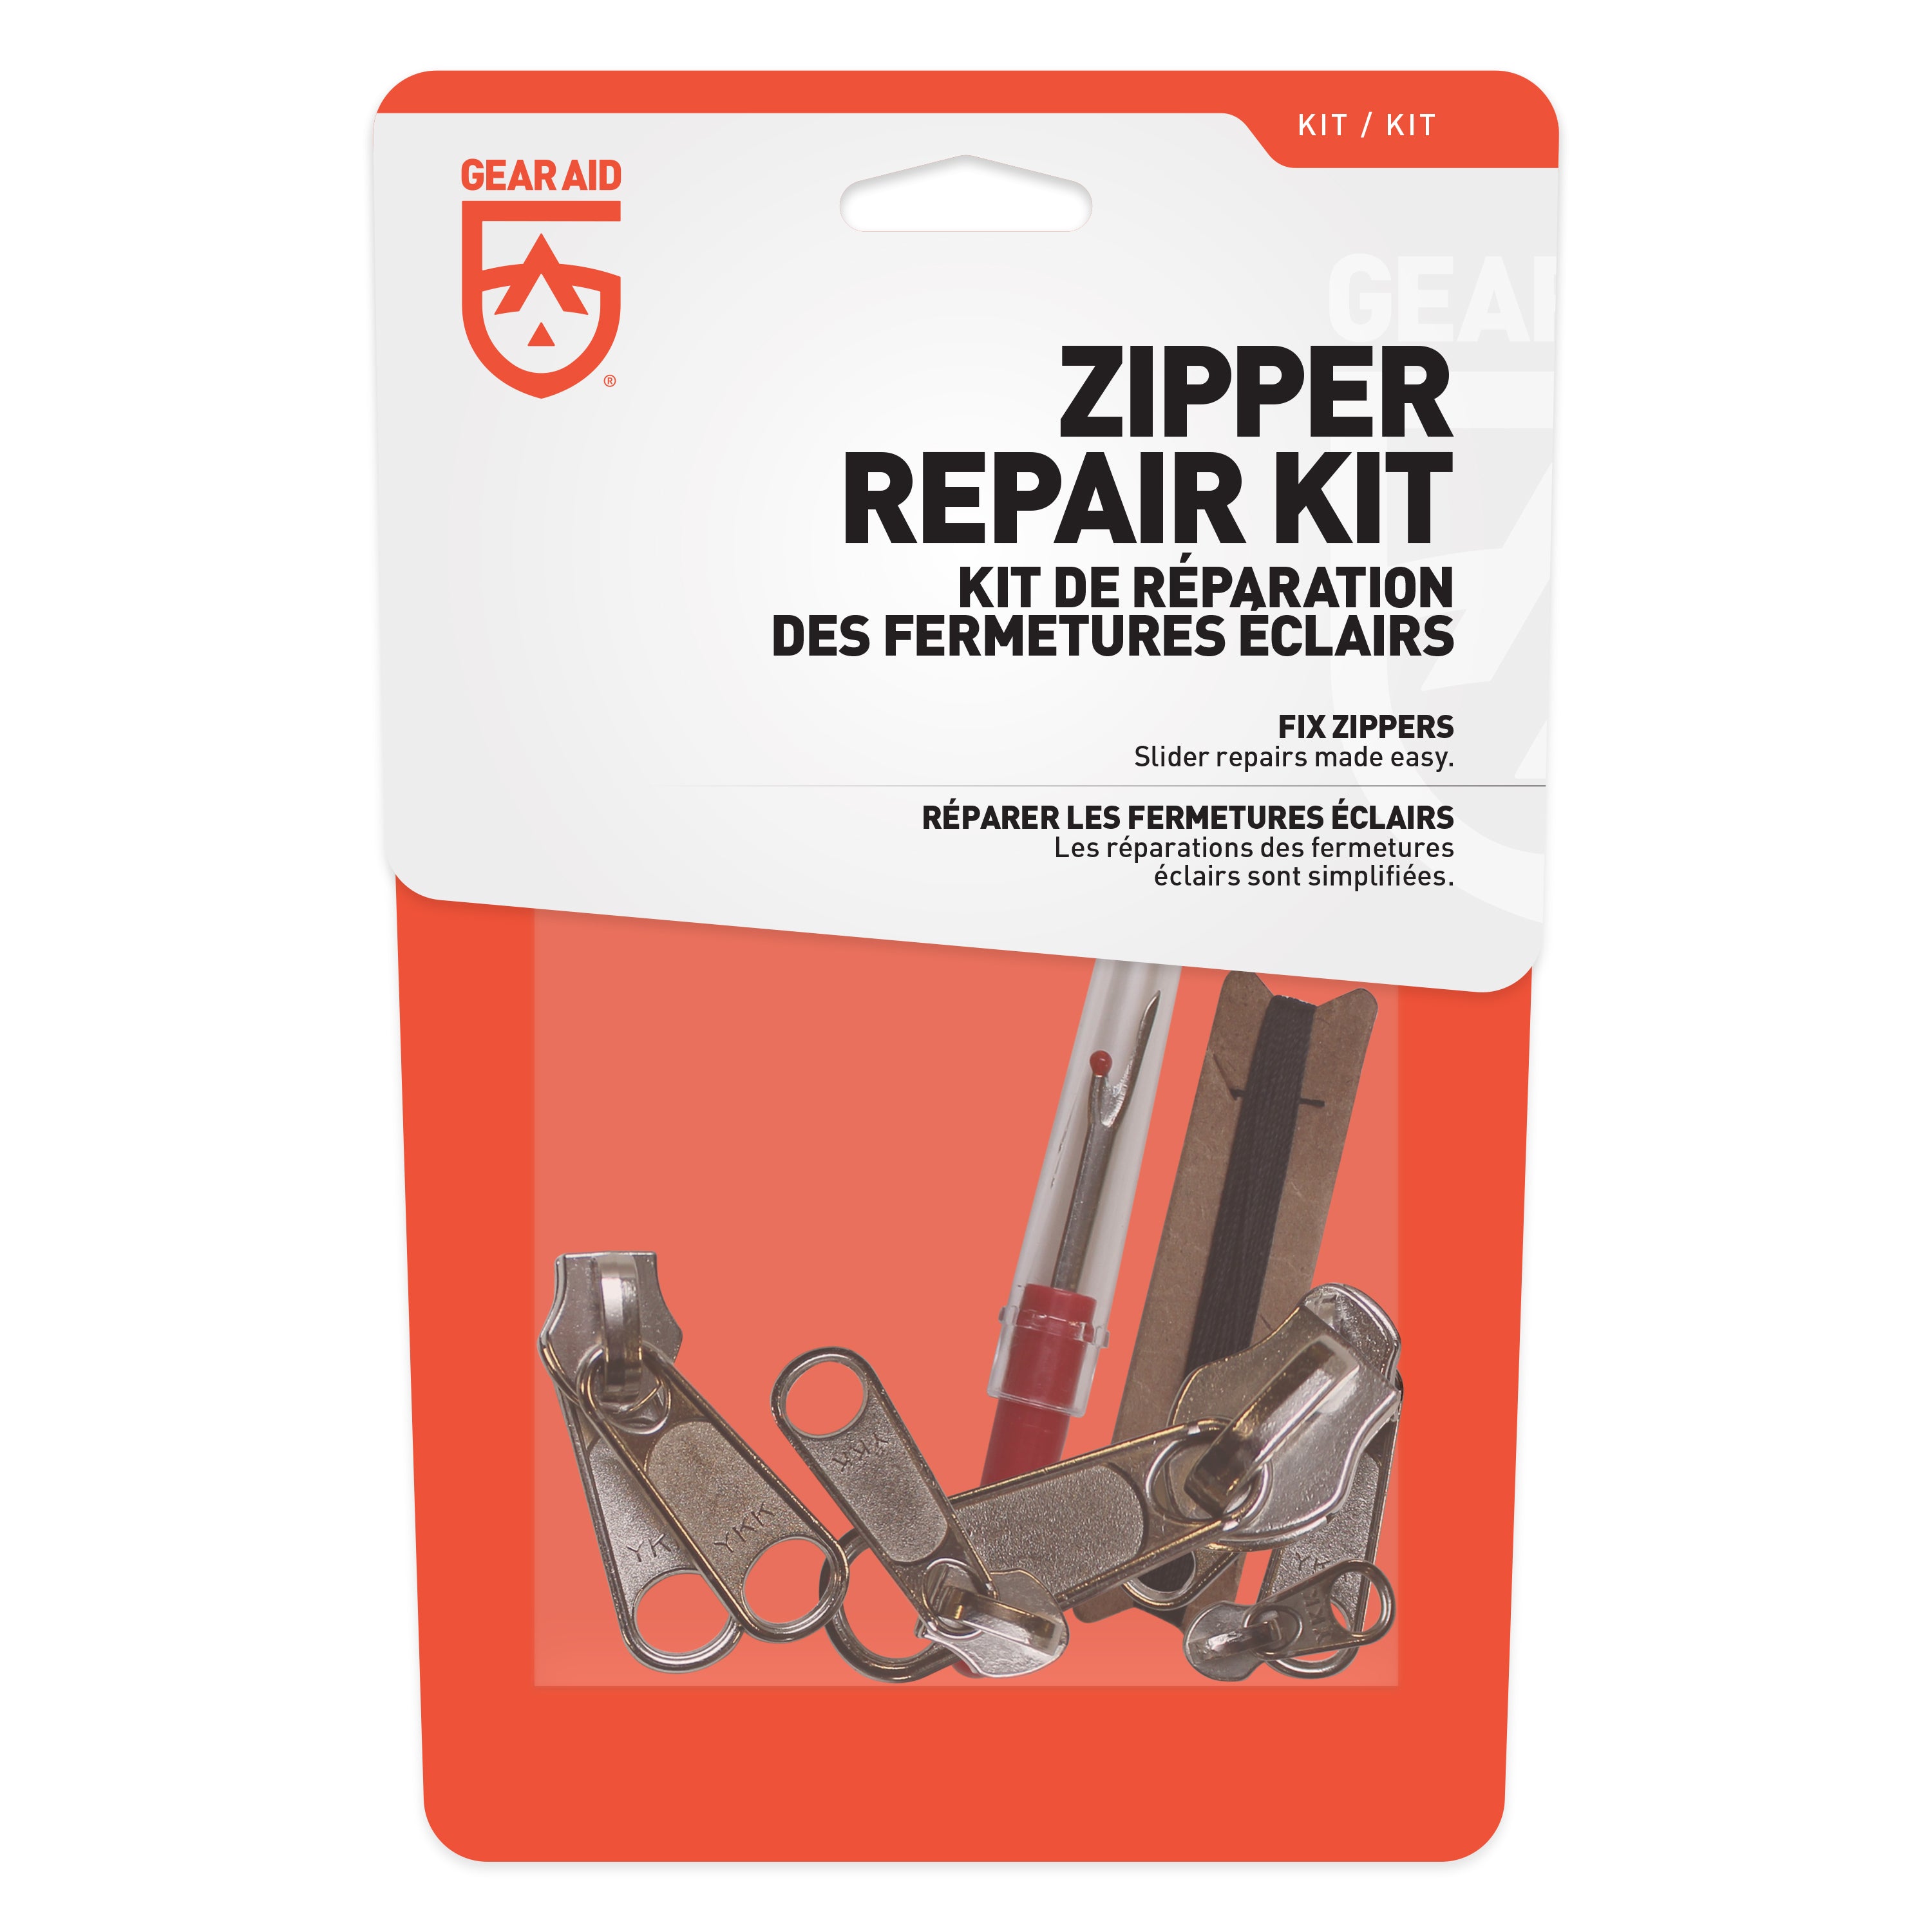 Broken zipper pull, replacement help